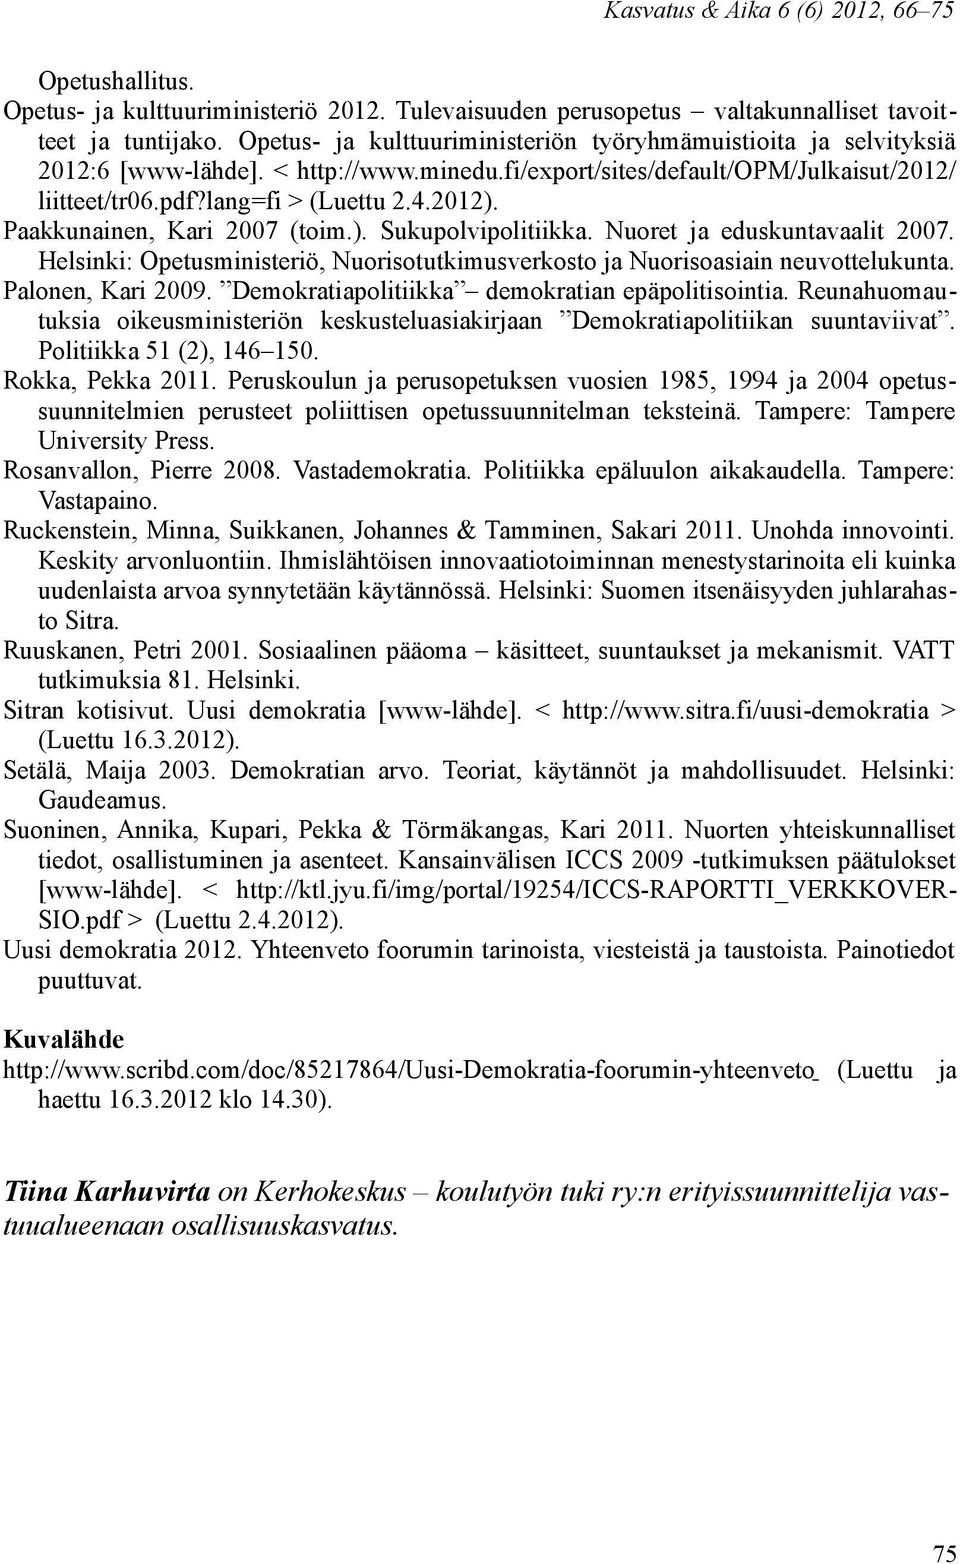 Paakkunainen, Kari 2007 (toim.). Sukupolvipolitiikka. Nuoret ja eduskuntavaalit 2007. Helsinki: Opetusministeriö, Nuorisotutkimusverkosto ja Nuorisoasiain neuvottelukunta. Palonen, Kari 2009.